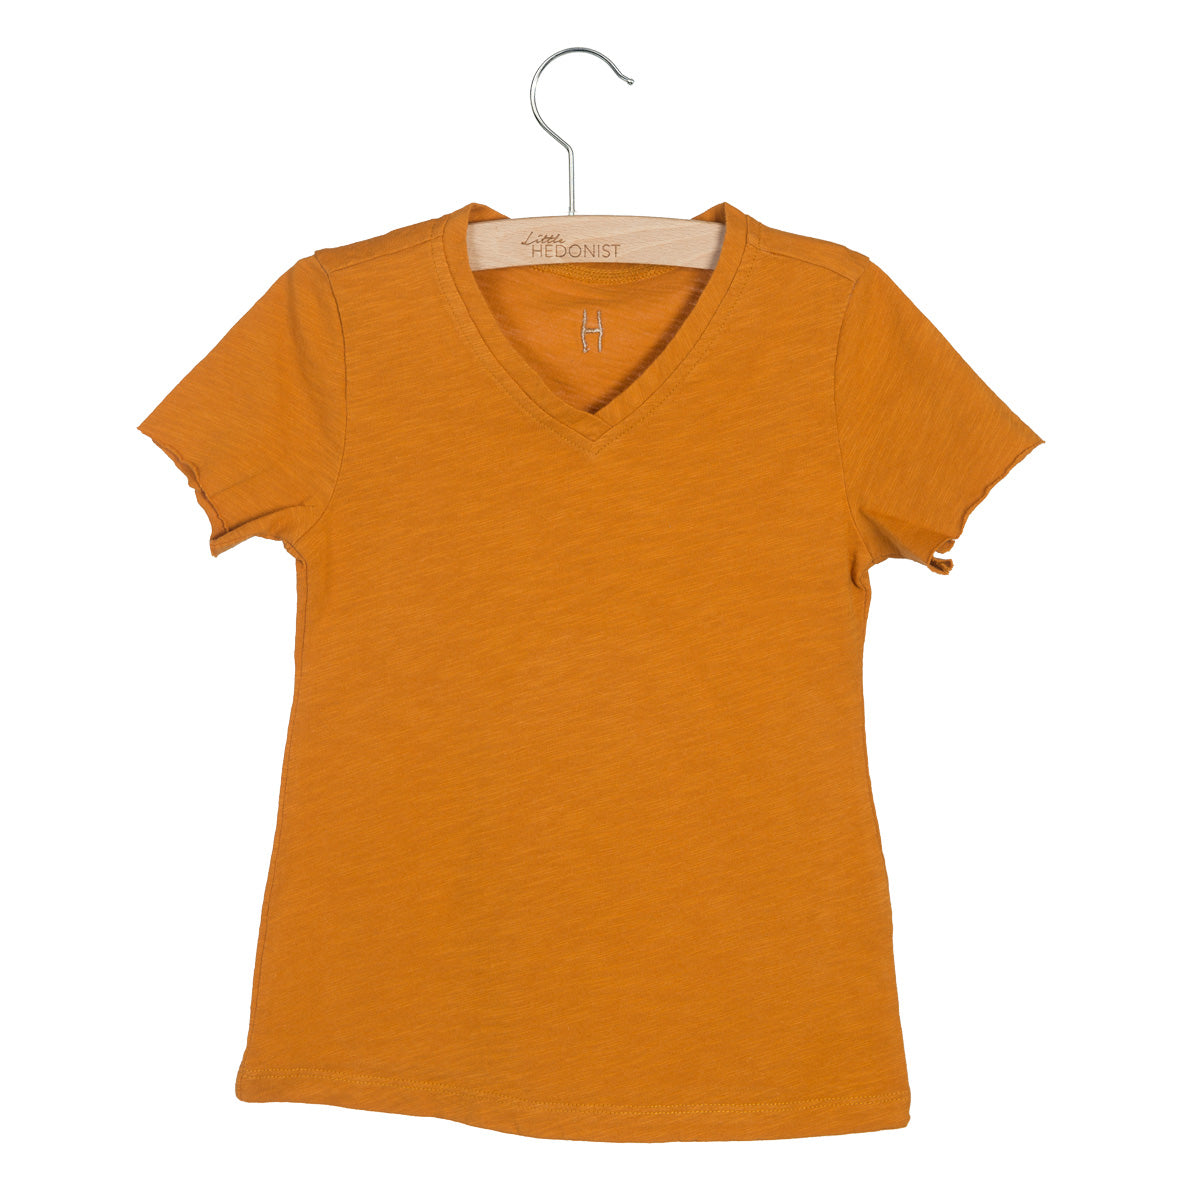 LITTLE HEDONIST - T-shirt à manches courtes marron neuf - 12 mois